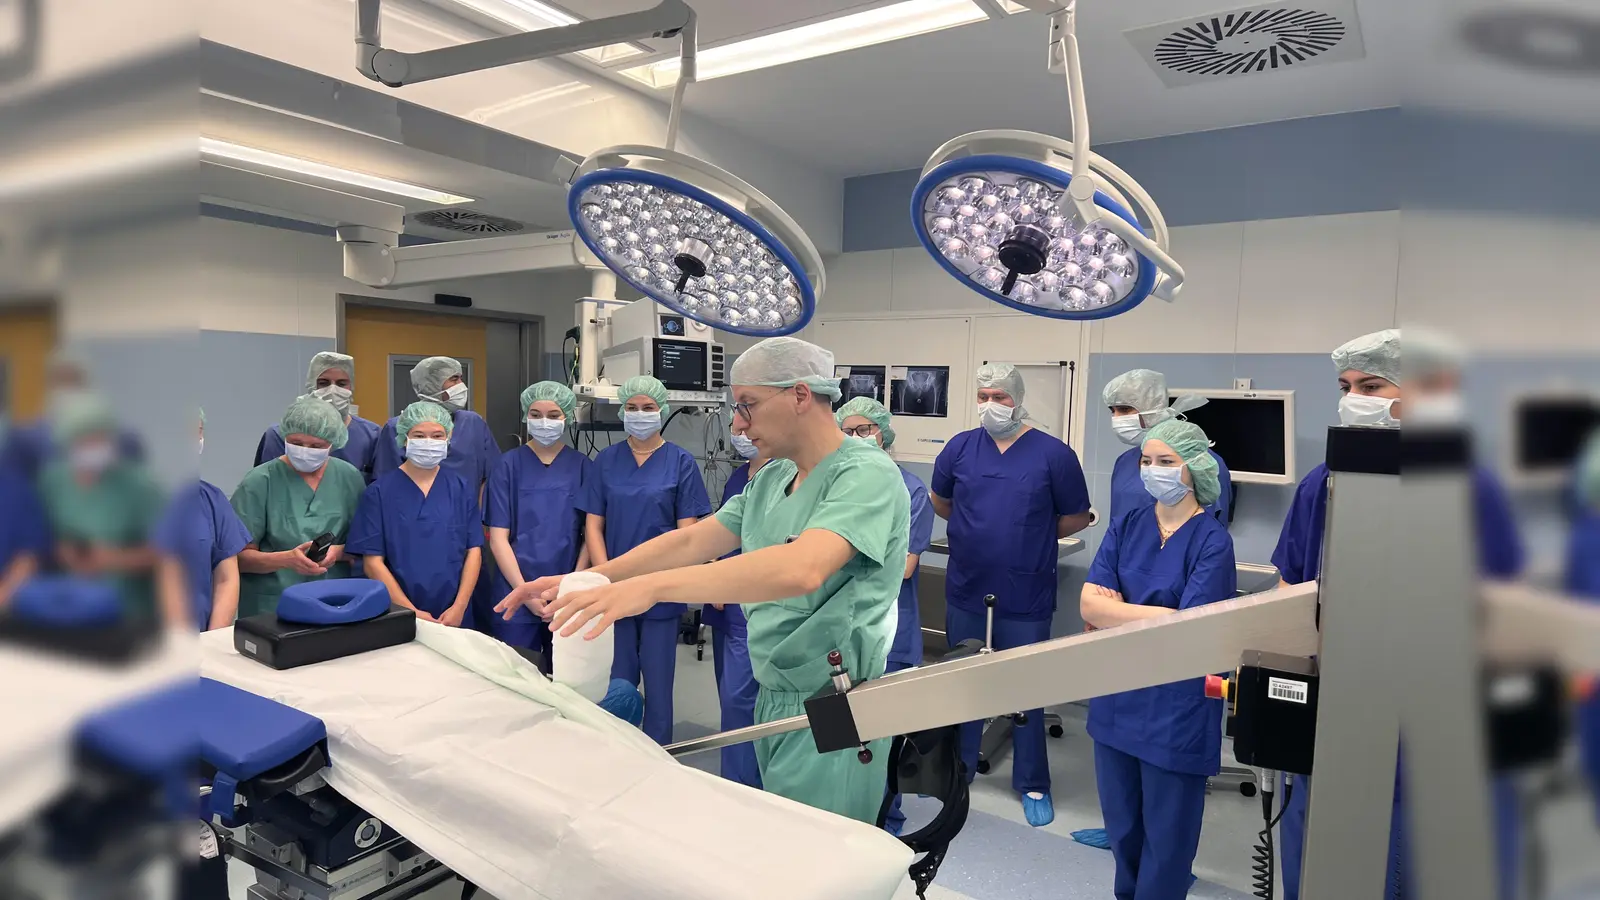 Der Besuch im Operationssaal rundete eine gelungene Präsentation des zertifizierten Endoprothetikzentrums am St. Vincenz Hospital Brakel ab. Foto: Kreis Höxter (Foto: Kreis Höxter)